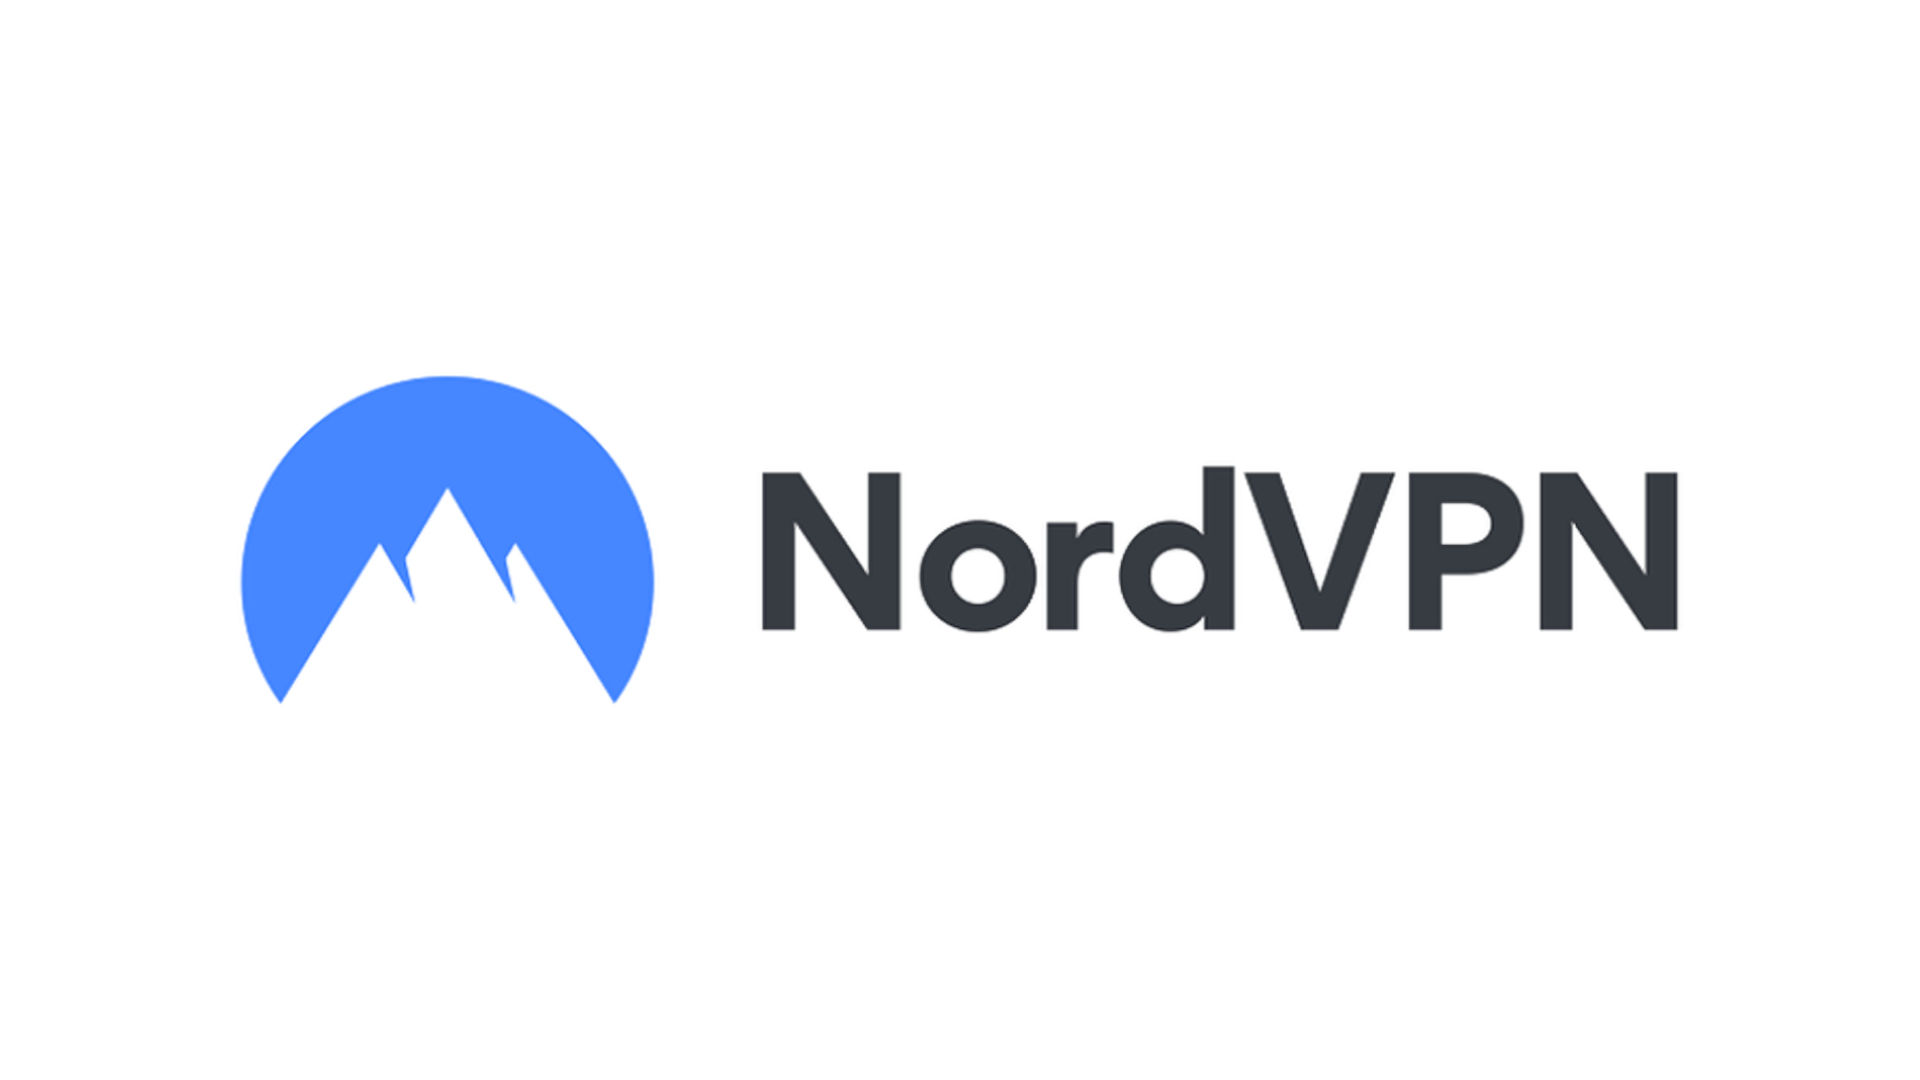 ה- VPN הטוב ביותר ל- iPad - NORDVPN. תמונה מציגה את העסק